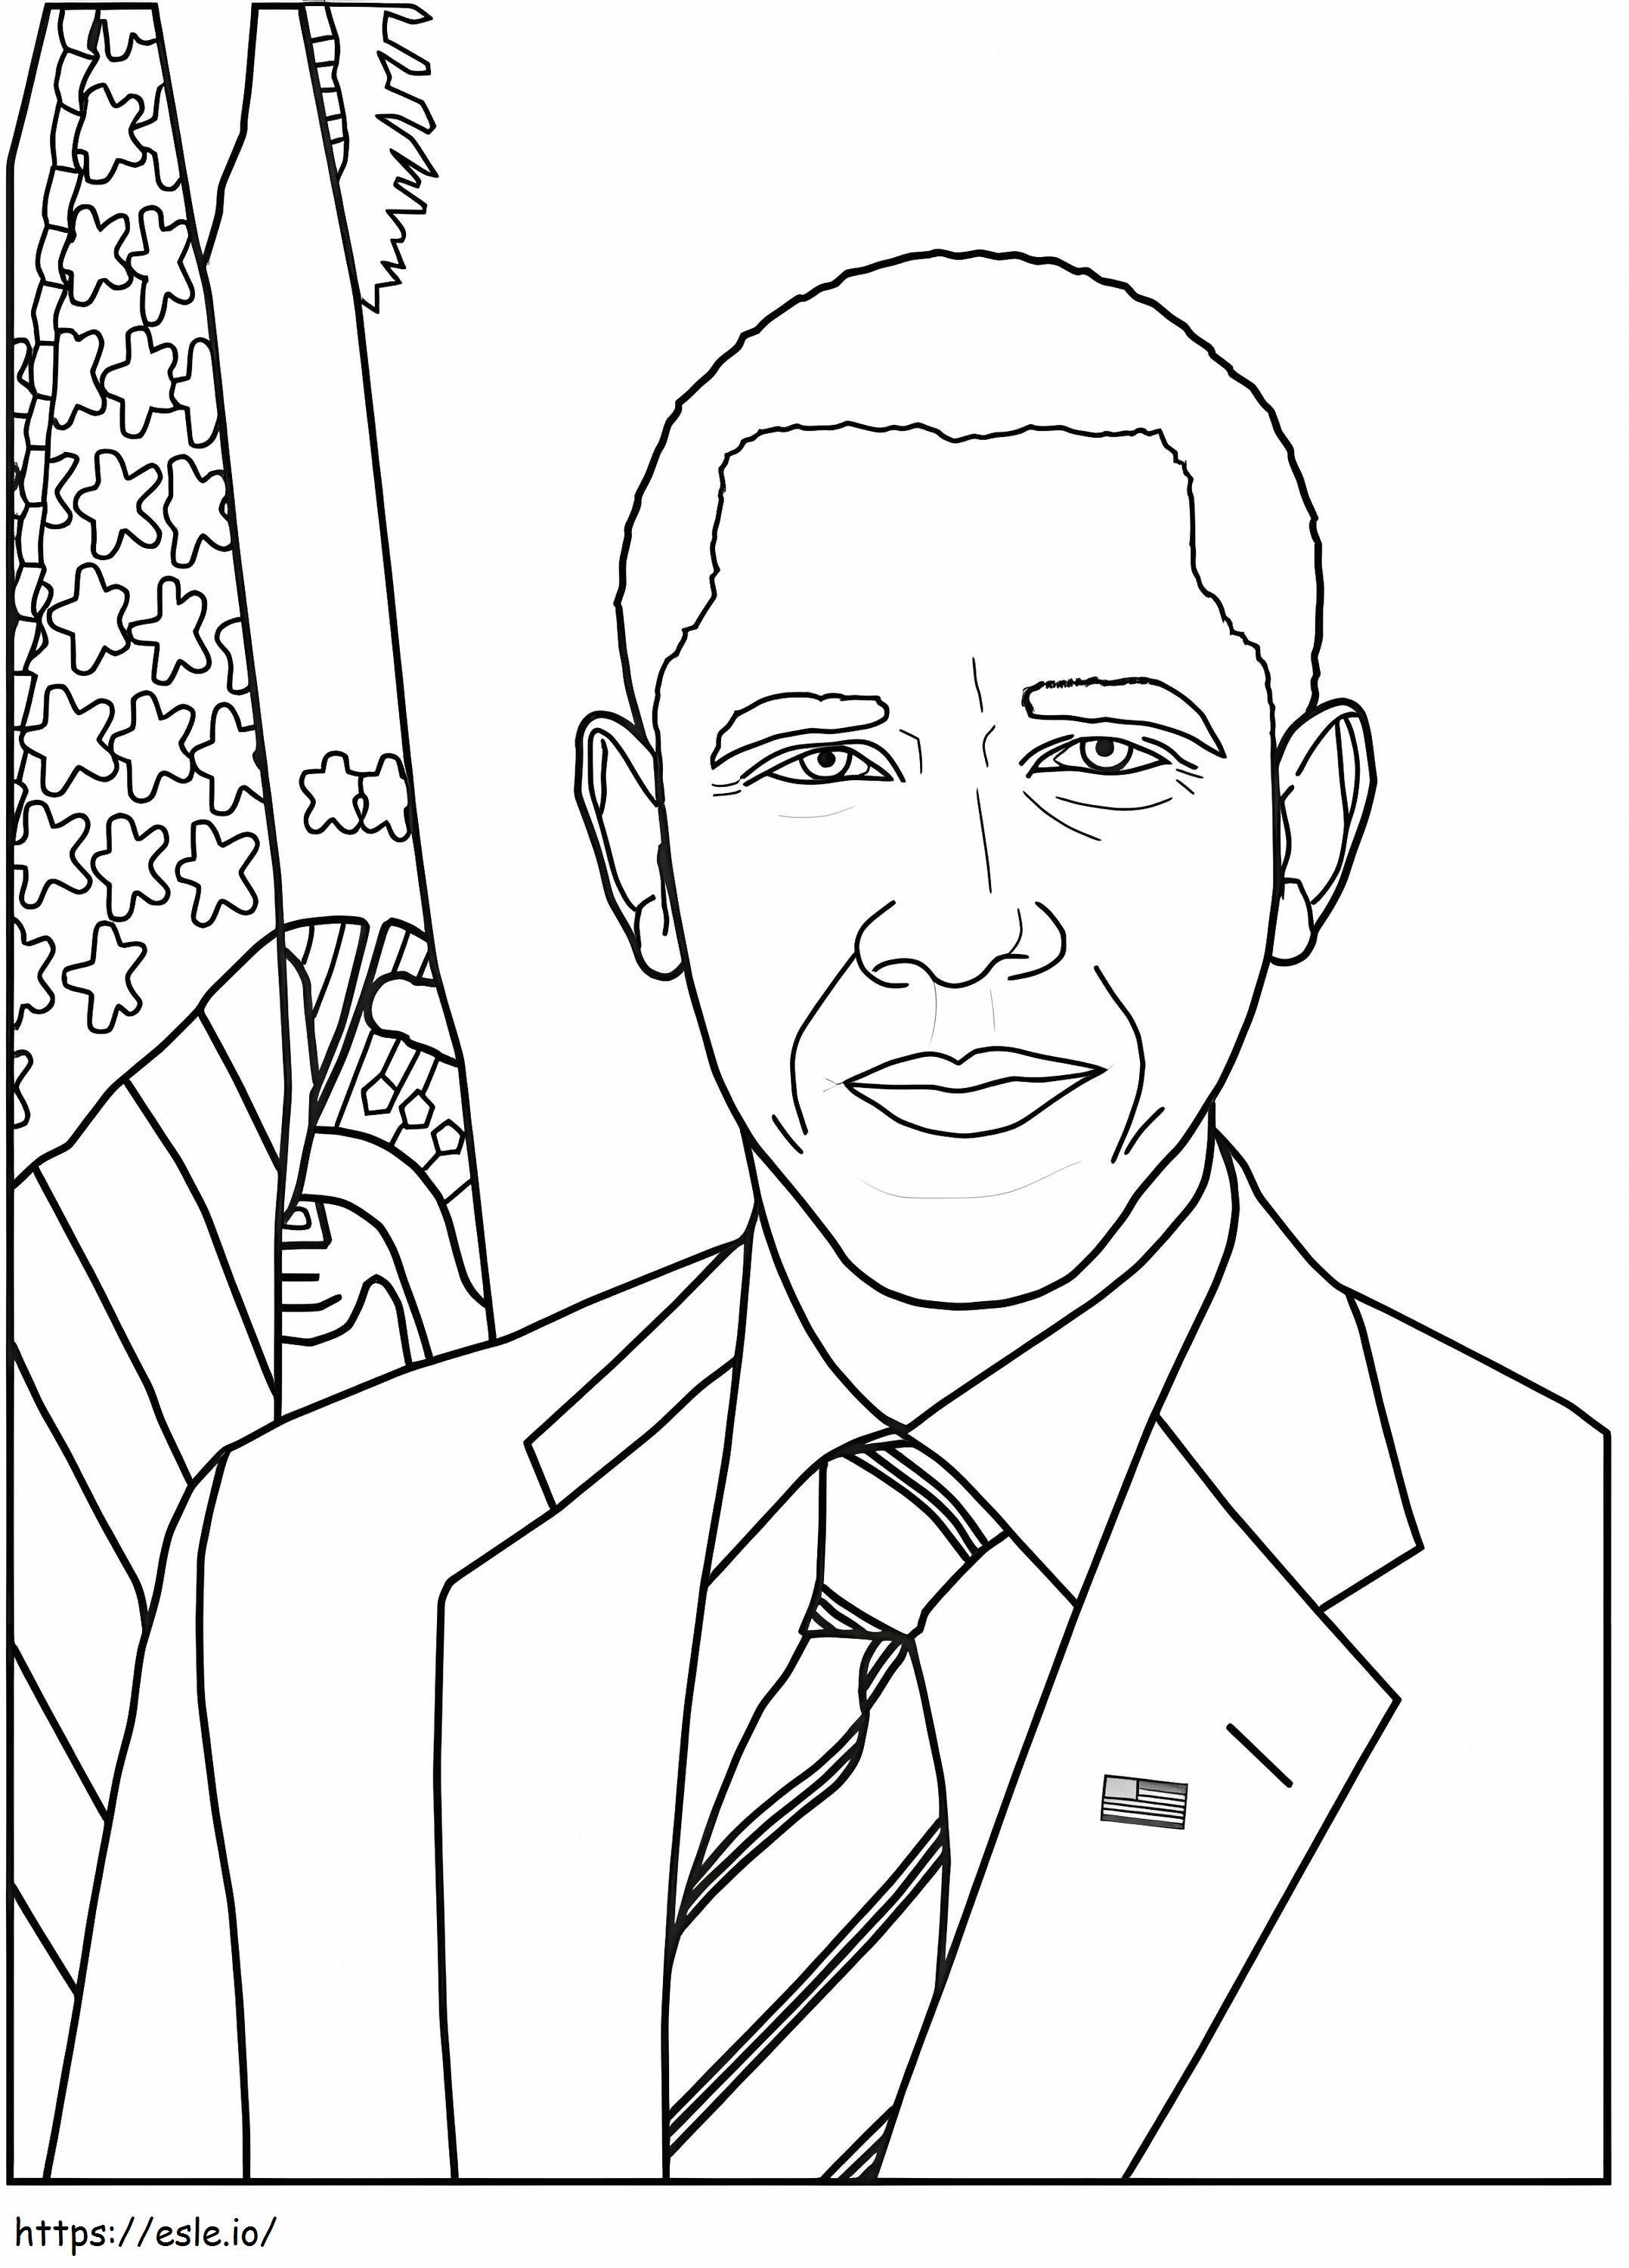 Cara De Obama coloring page